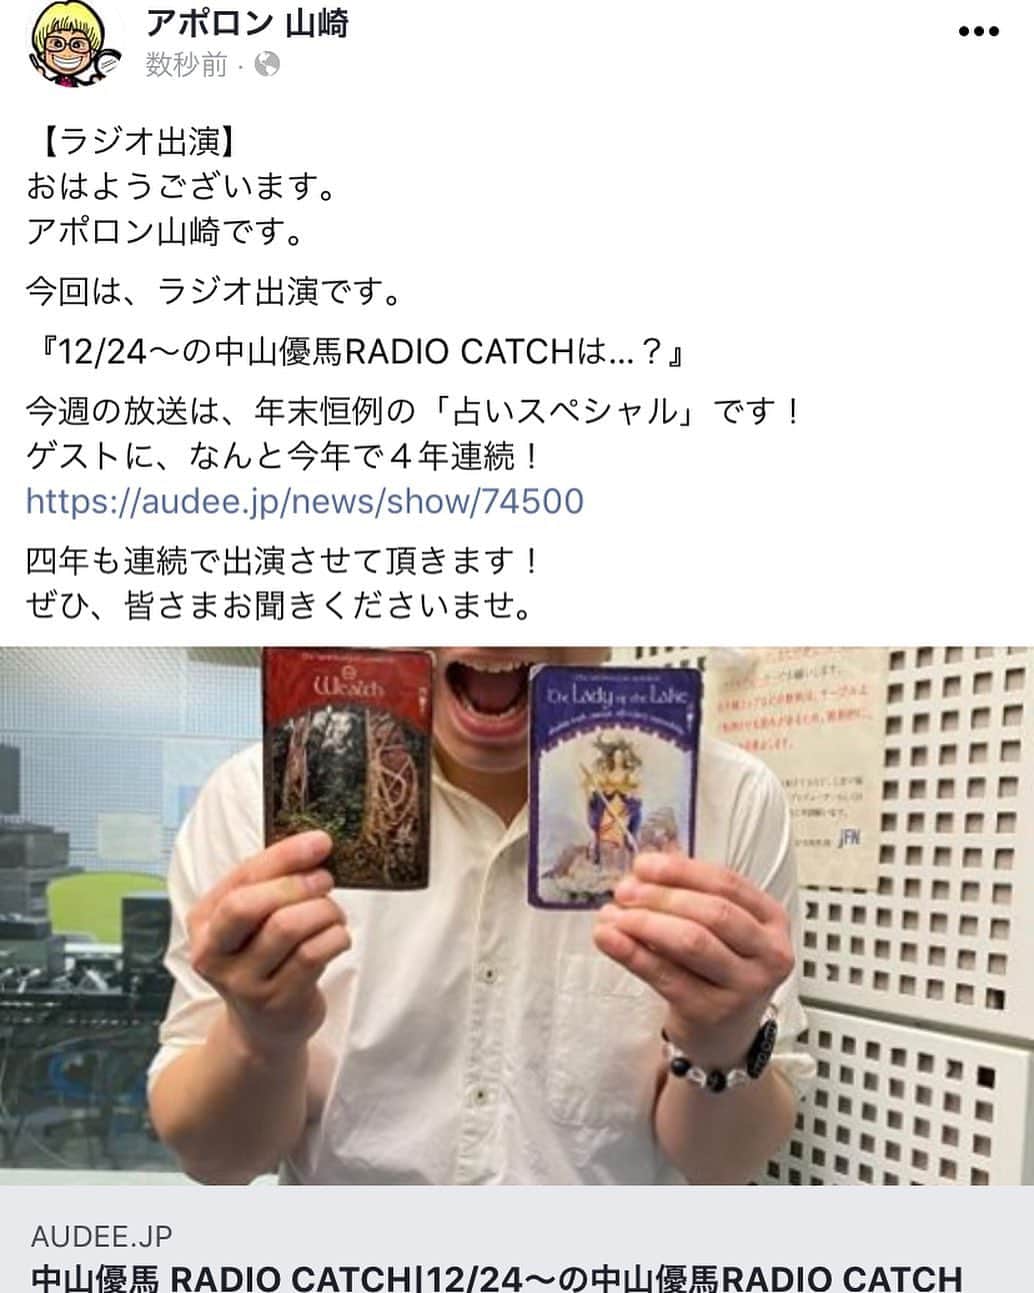 アポロン山崎のインスタグラム：「【ラジオ出演】 おはようございます。 アポロン山崎です。  今回は、ラジオ出演です。  『12/24〜の中山優馬RADIO CATCHは…？』  今週の放送は、年末恒例の「占いスペシャル」です！ ゲストに、なんと今年で４年連続！ https://audee.jp/news/show/74500  四年も連続で出演させて頂きます！ ぜひ、皆さまお聞きくださいませ。 #アポロン山崎 #アポロン #アポロン山崎ハッピーチャンネル  #アポロン山崎毎日ハッピー占い  #アポロン山崎のとーとつにエジプト神占い  #とーとつにエジプト神占い  #ジャニーズ #中山優馬 くん #本高克樹 くん #radiocatch  #中山優馬radiocatch  #占いスペシャル #トッカイ #ドラマトッカイ #レディキャ #ラジオ #ラジオ出演 #ドラマ #アイドル #ジャニーズジュニア #7men侍 さん #7men侍担と繋がりたい  #中山優馬担と繋がりたい」